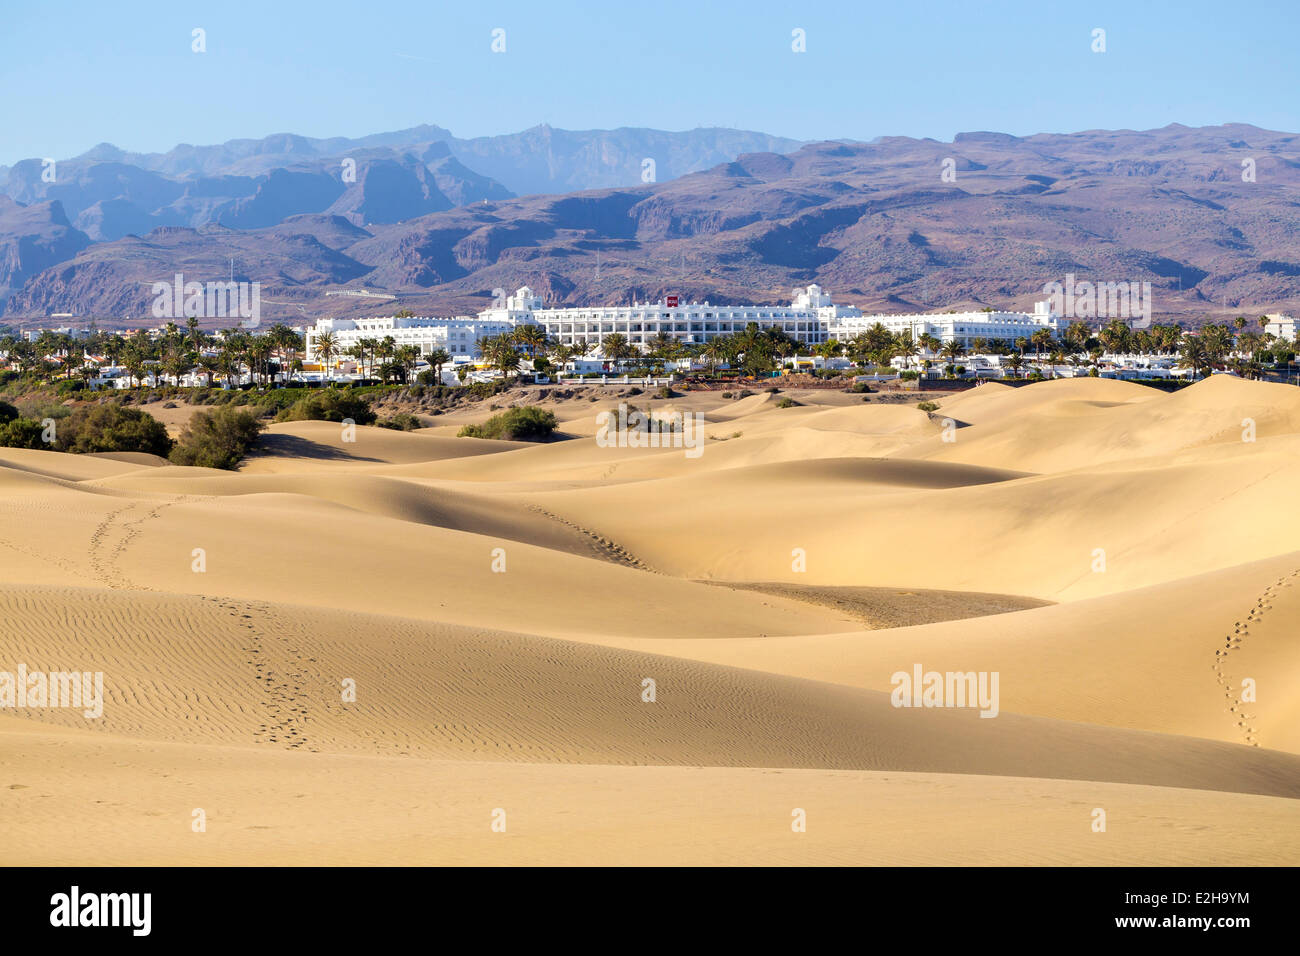 Hôtel Riu sur la plage avec des dunes de Maspalomas, Dunas de Maspalomas, Gran Canaria, Îles Canaries, Espagne Banque D'Images